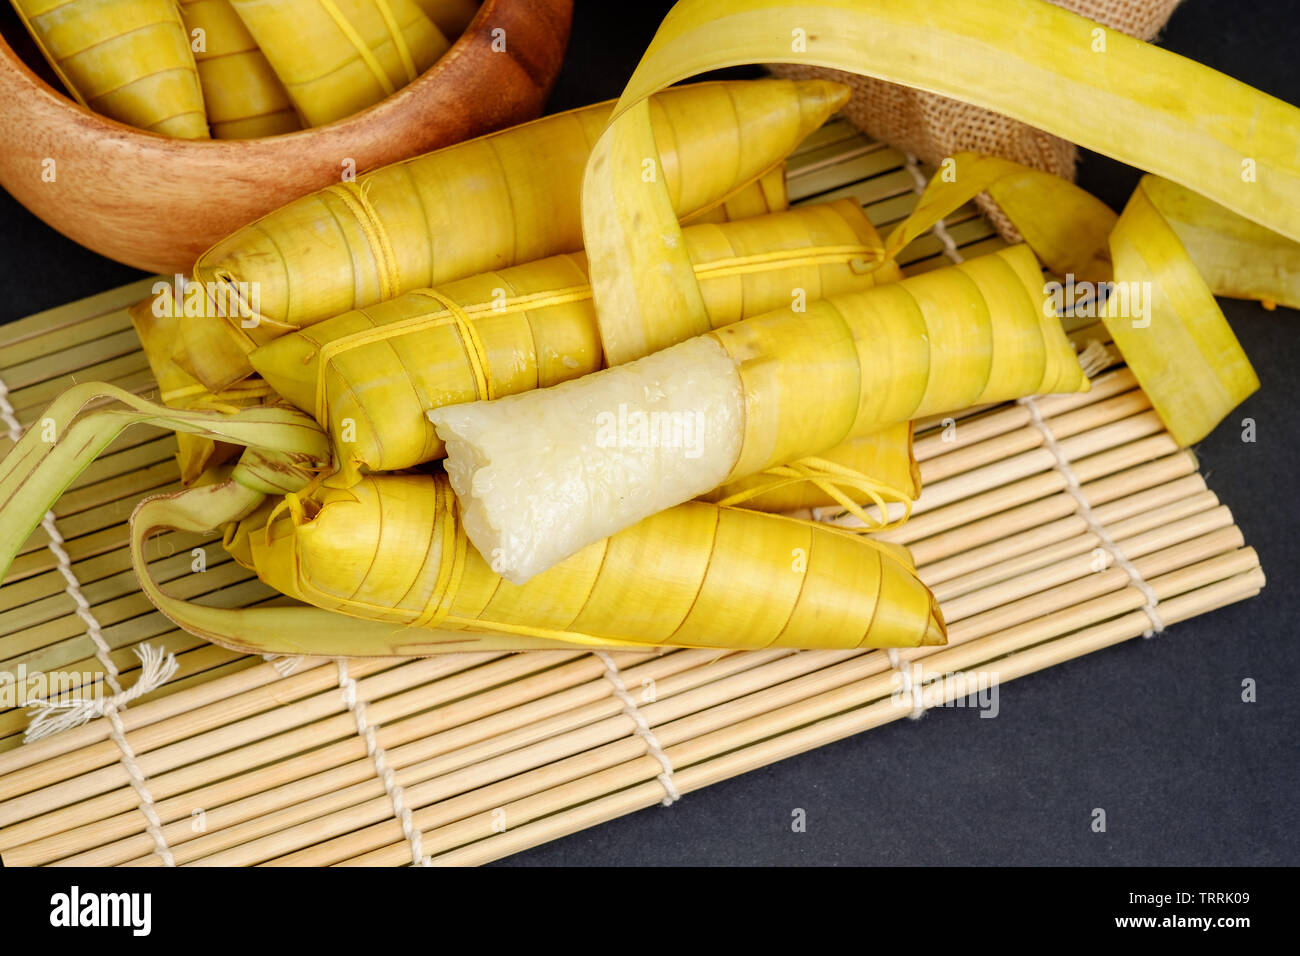 Suman sa Ibos, un tradicional pastel de arroz pegajoso envuelto en hojas de buli Foto de stock